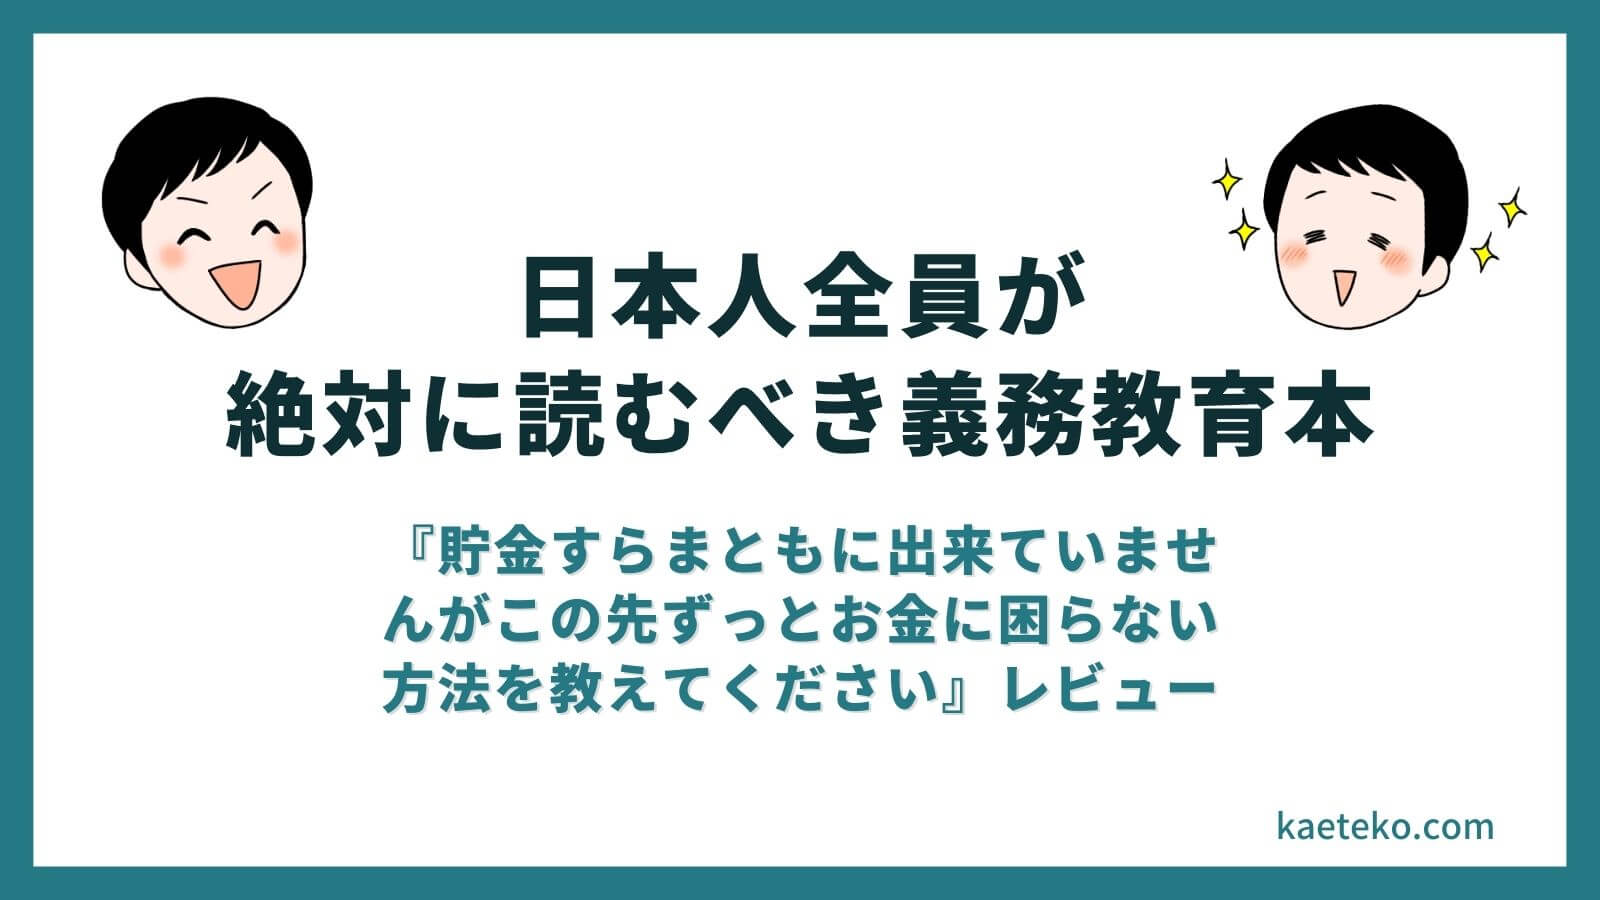 決定！！『お金のお守り本』は日本人全員が絶対に読むべき義務教育本